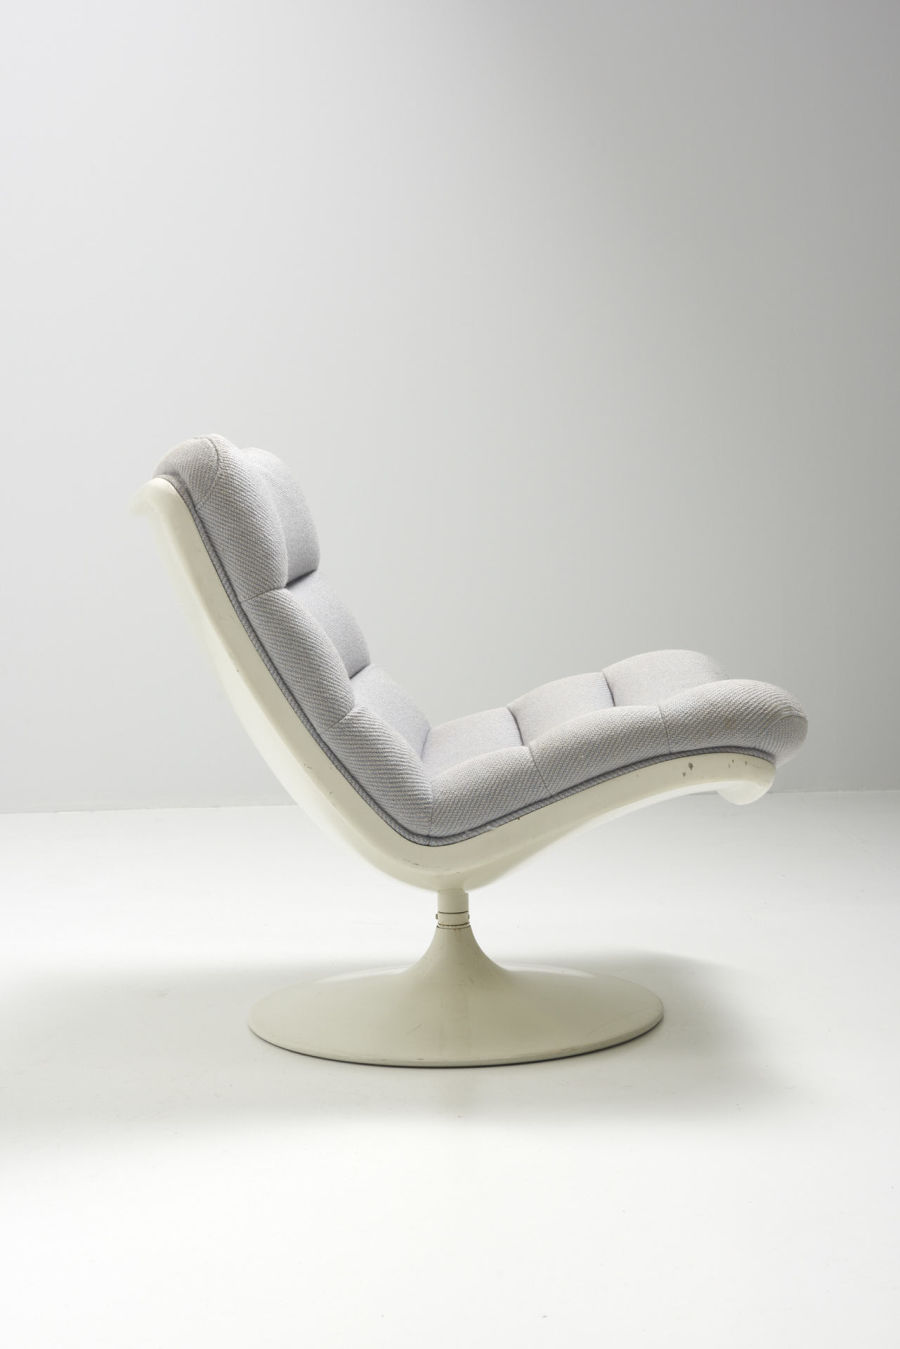 modestfurniture-vintage-2871-geoffrey-harcourt-easy-chair-artifort03